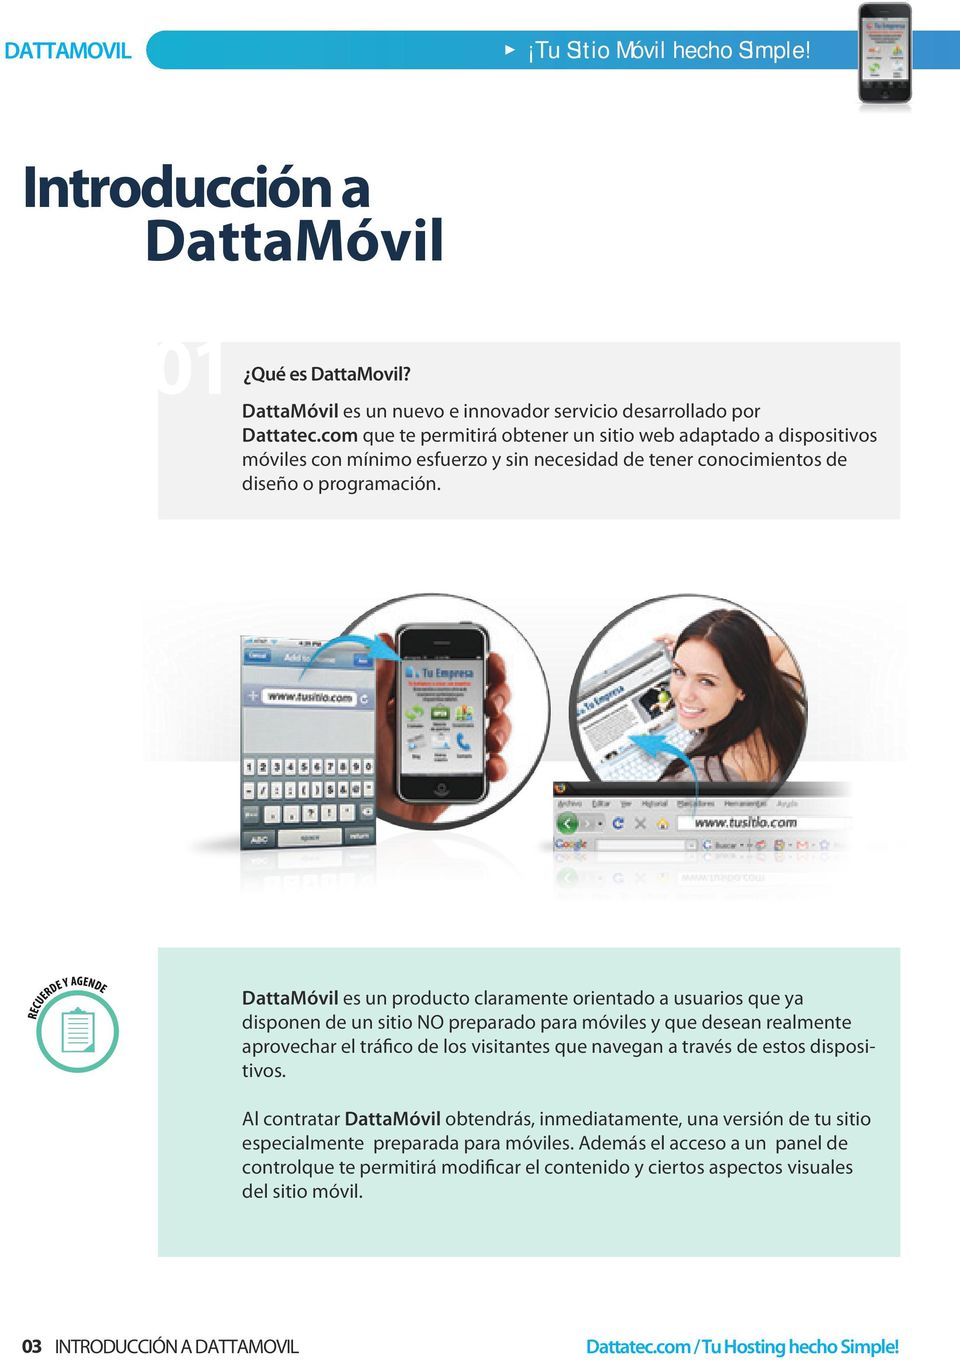 DattaMóvil es un producto claramente orientado a usuarios que ya disponen de un sitio NO preparado para móviles y que desean realmente aprovechar el tráfico de los visitantes que navegan a